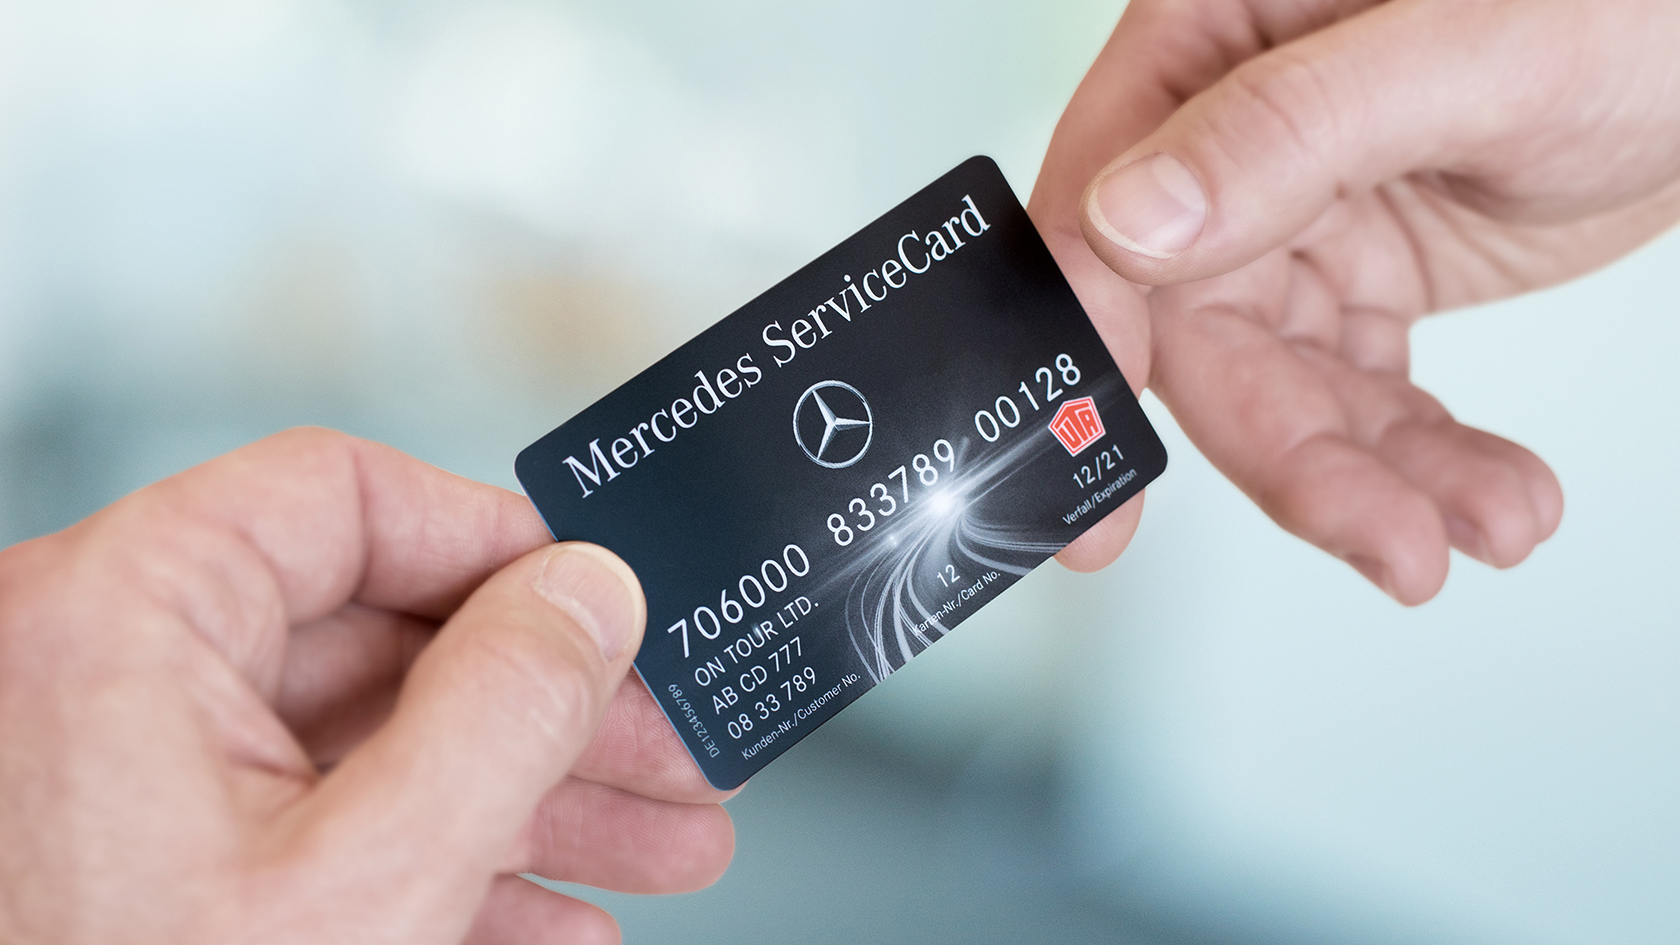 Bilde av to hender som holder et Mercedes ServiceCard